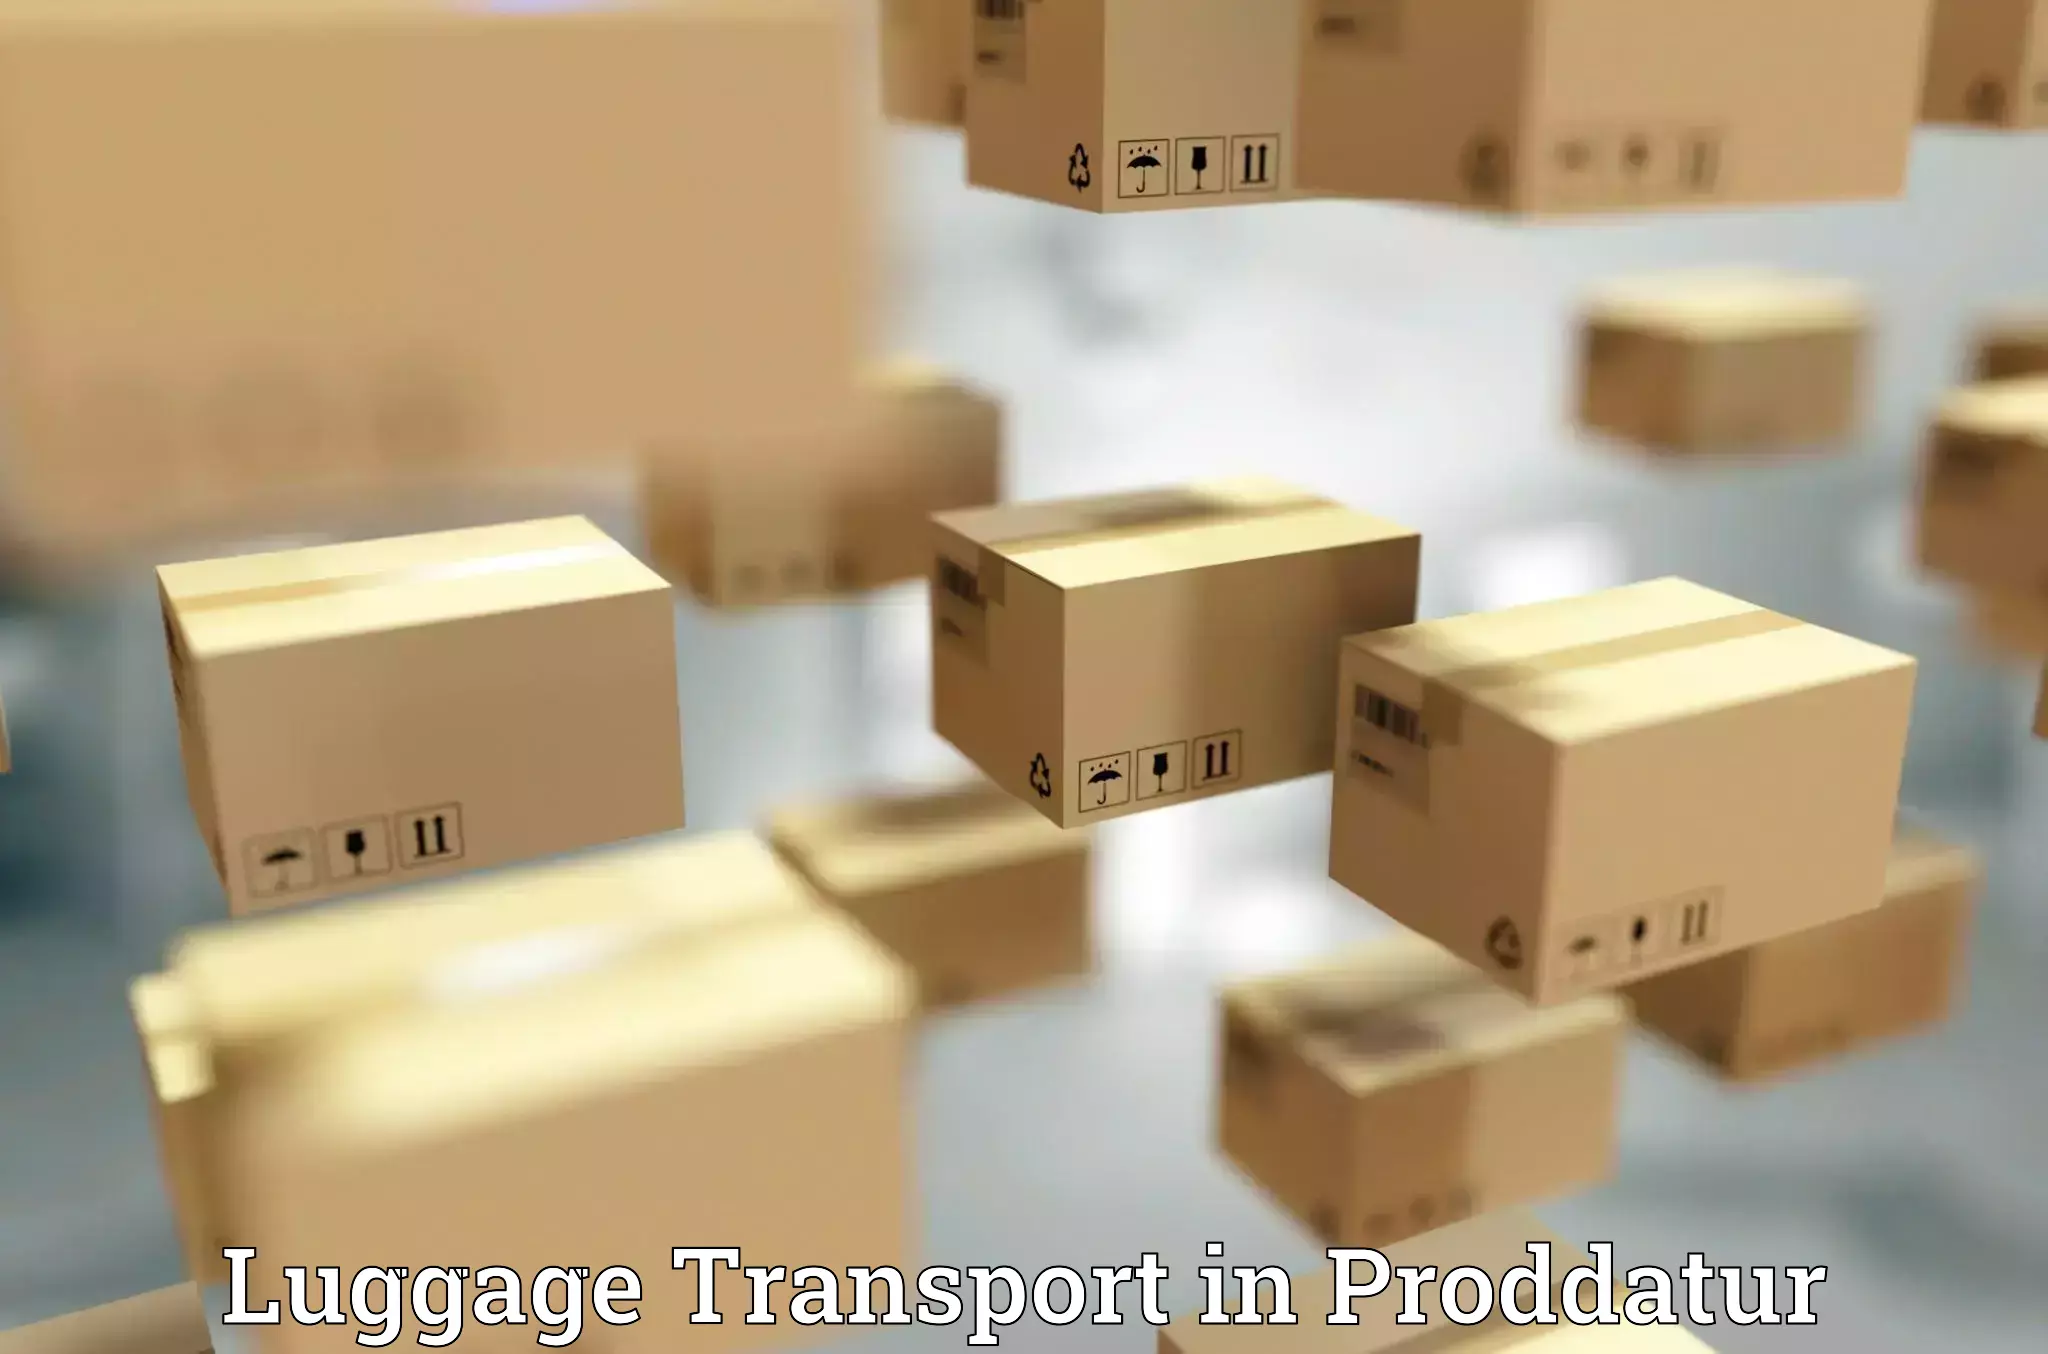 Baggage transport calculator in Proddatur